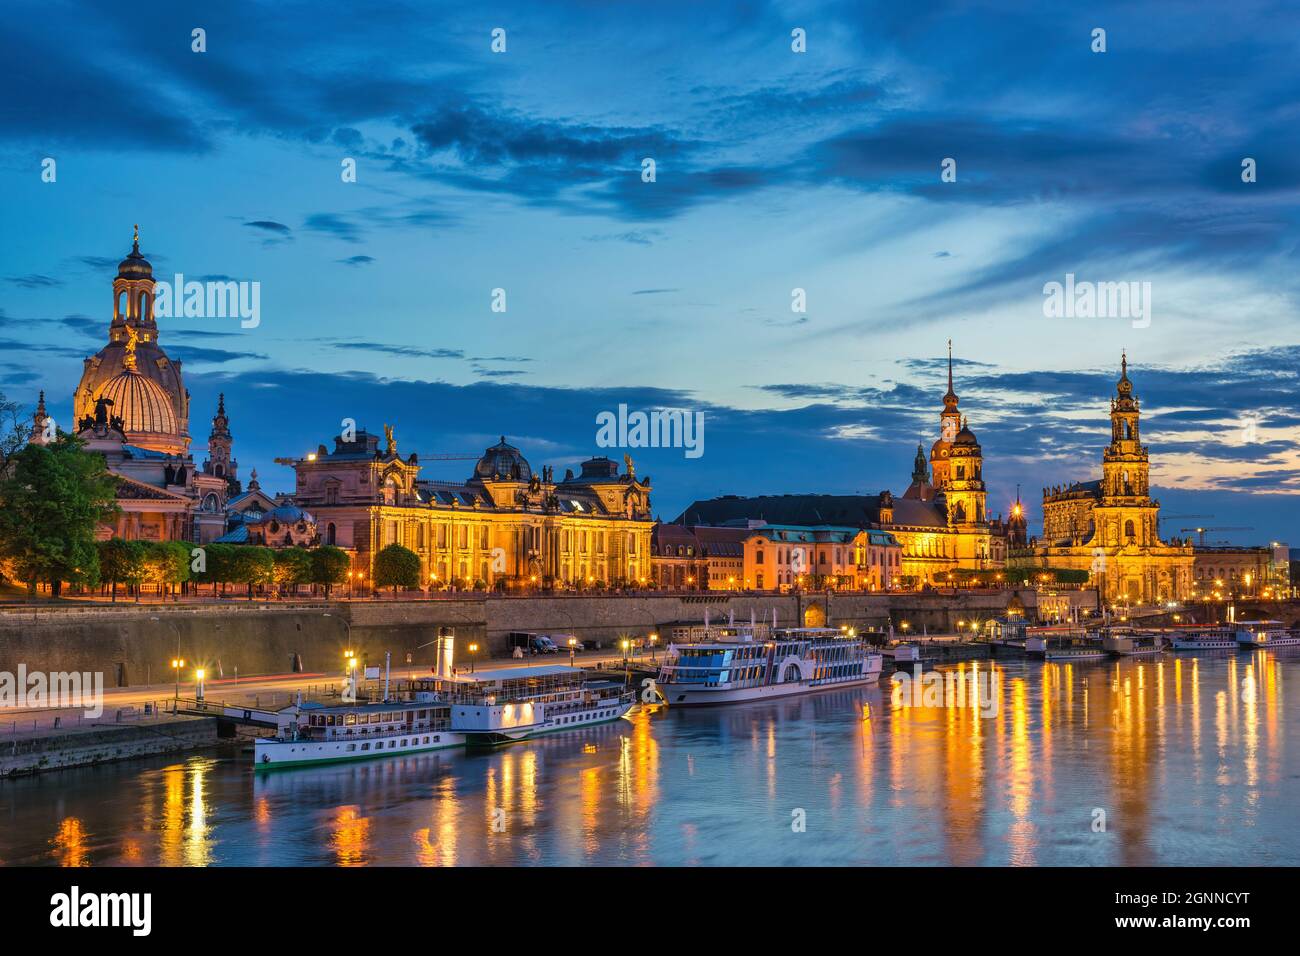 Dresda Germania, skyline notturno della città sul fiume Elba e sul ponte Augustus Foto Stock